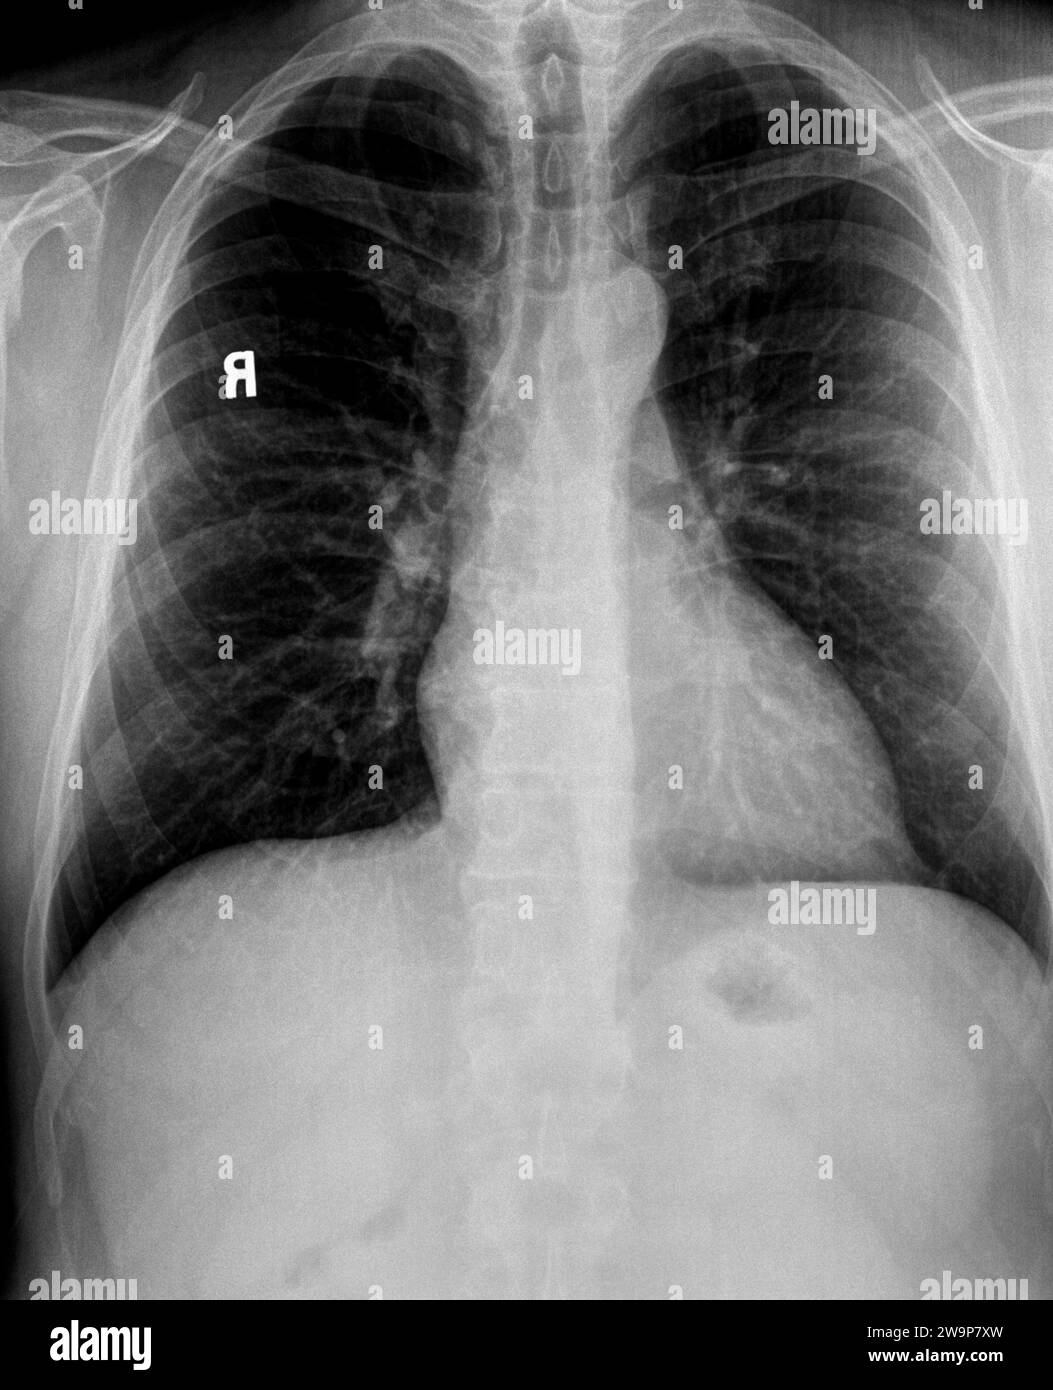 Radiographie thoracique d'un patient avec poumons emphysémateux, adénopathie Hilaire montrant le cœur, les vertèbres et les vaisseaux pulmonaires Banque D'Images